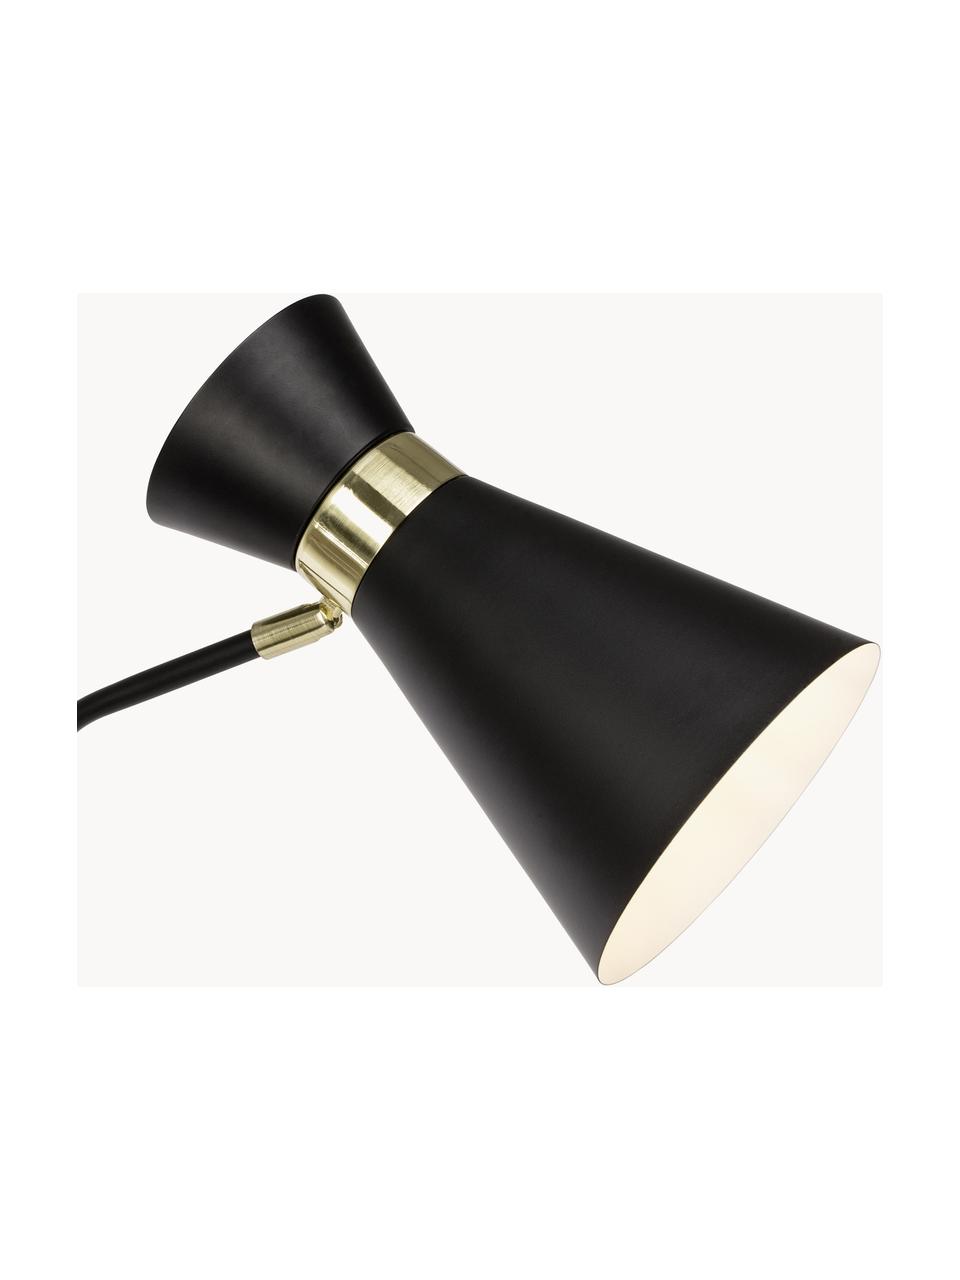 Lámpara de lectura retro de metal Grazia, Pantalla: metal pintado, Negro, dorado, Al 144 cm